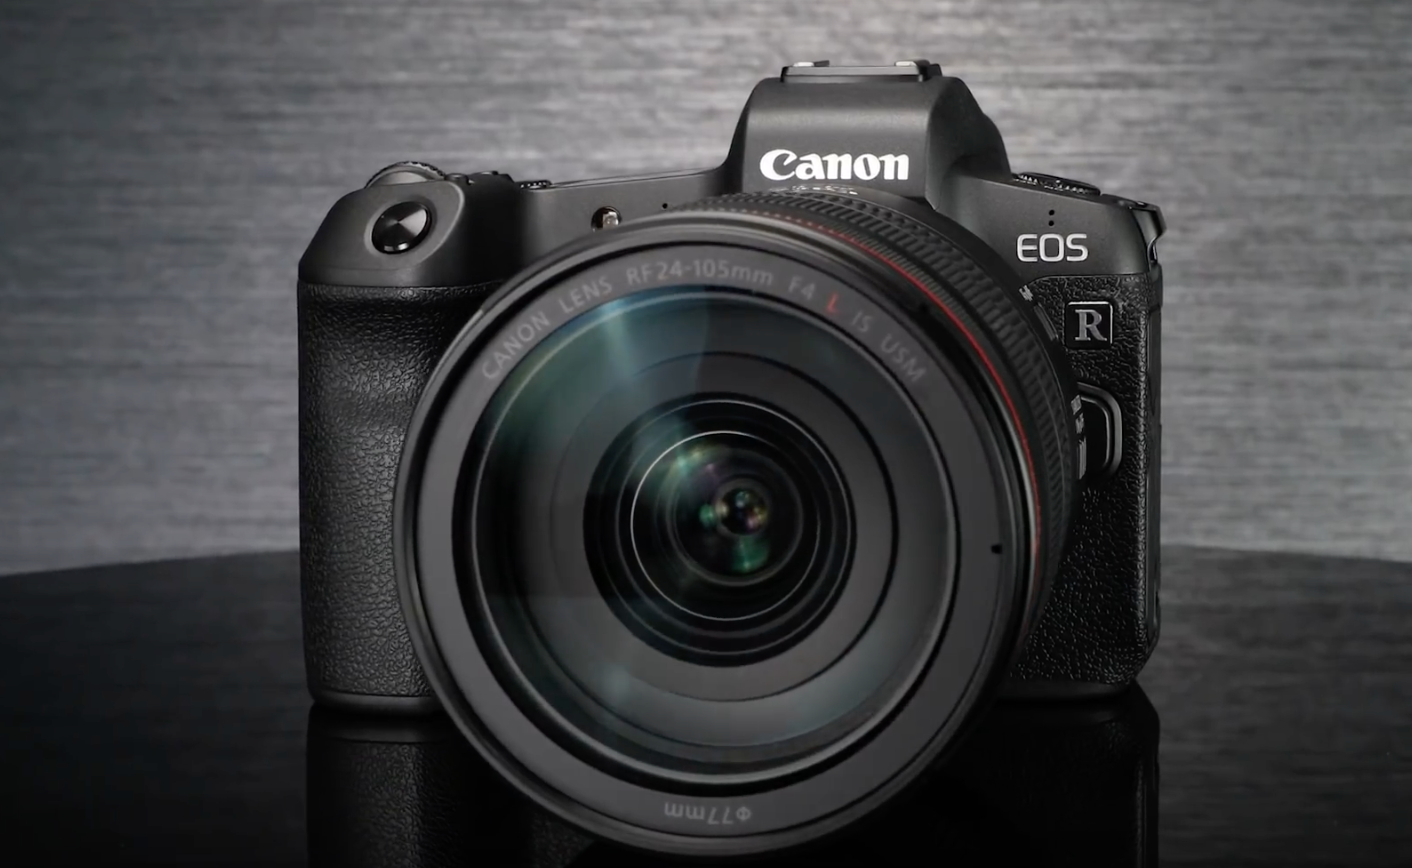 ชมภาพตัวอย่างจาก Canon EOS R กล้อง ​Full Frame Mirrorless รุ่นใหม่ล่าสุด!